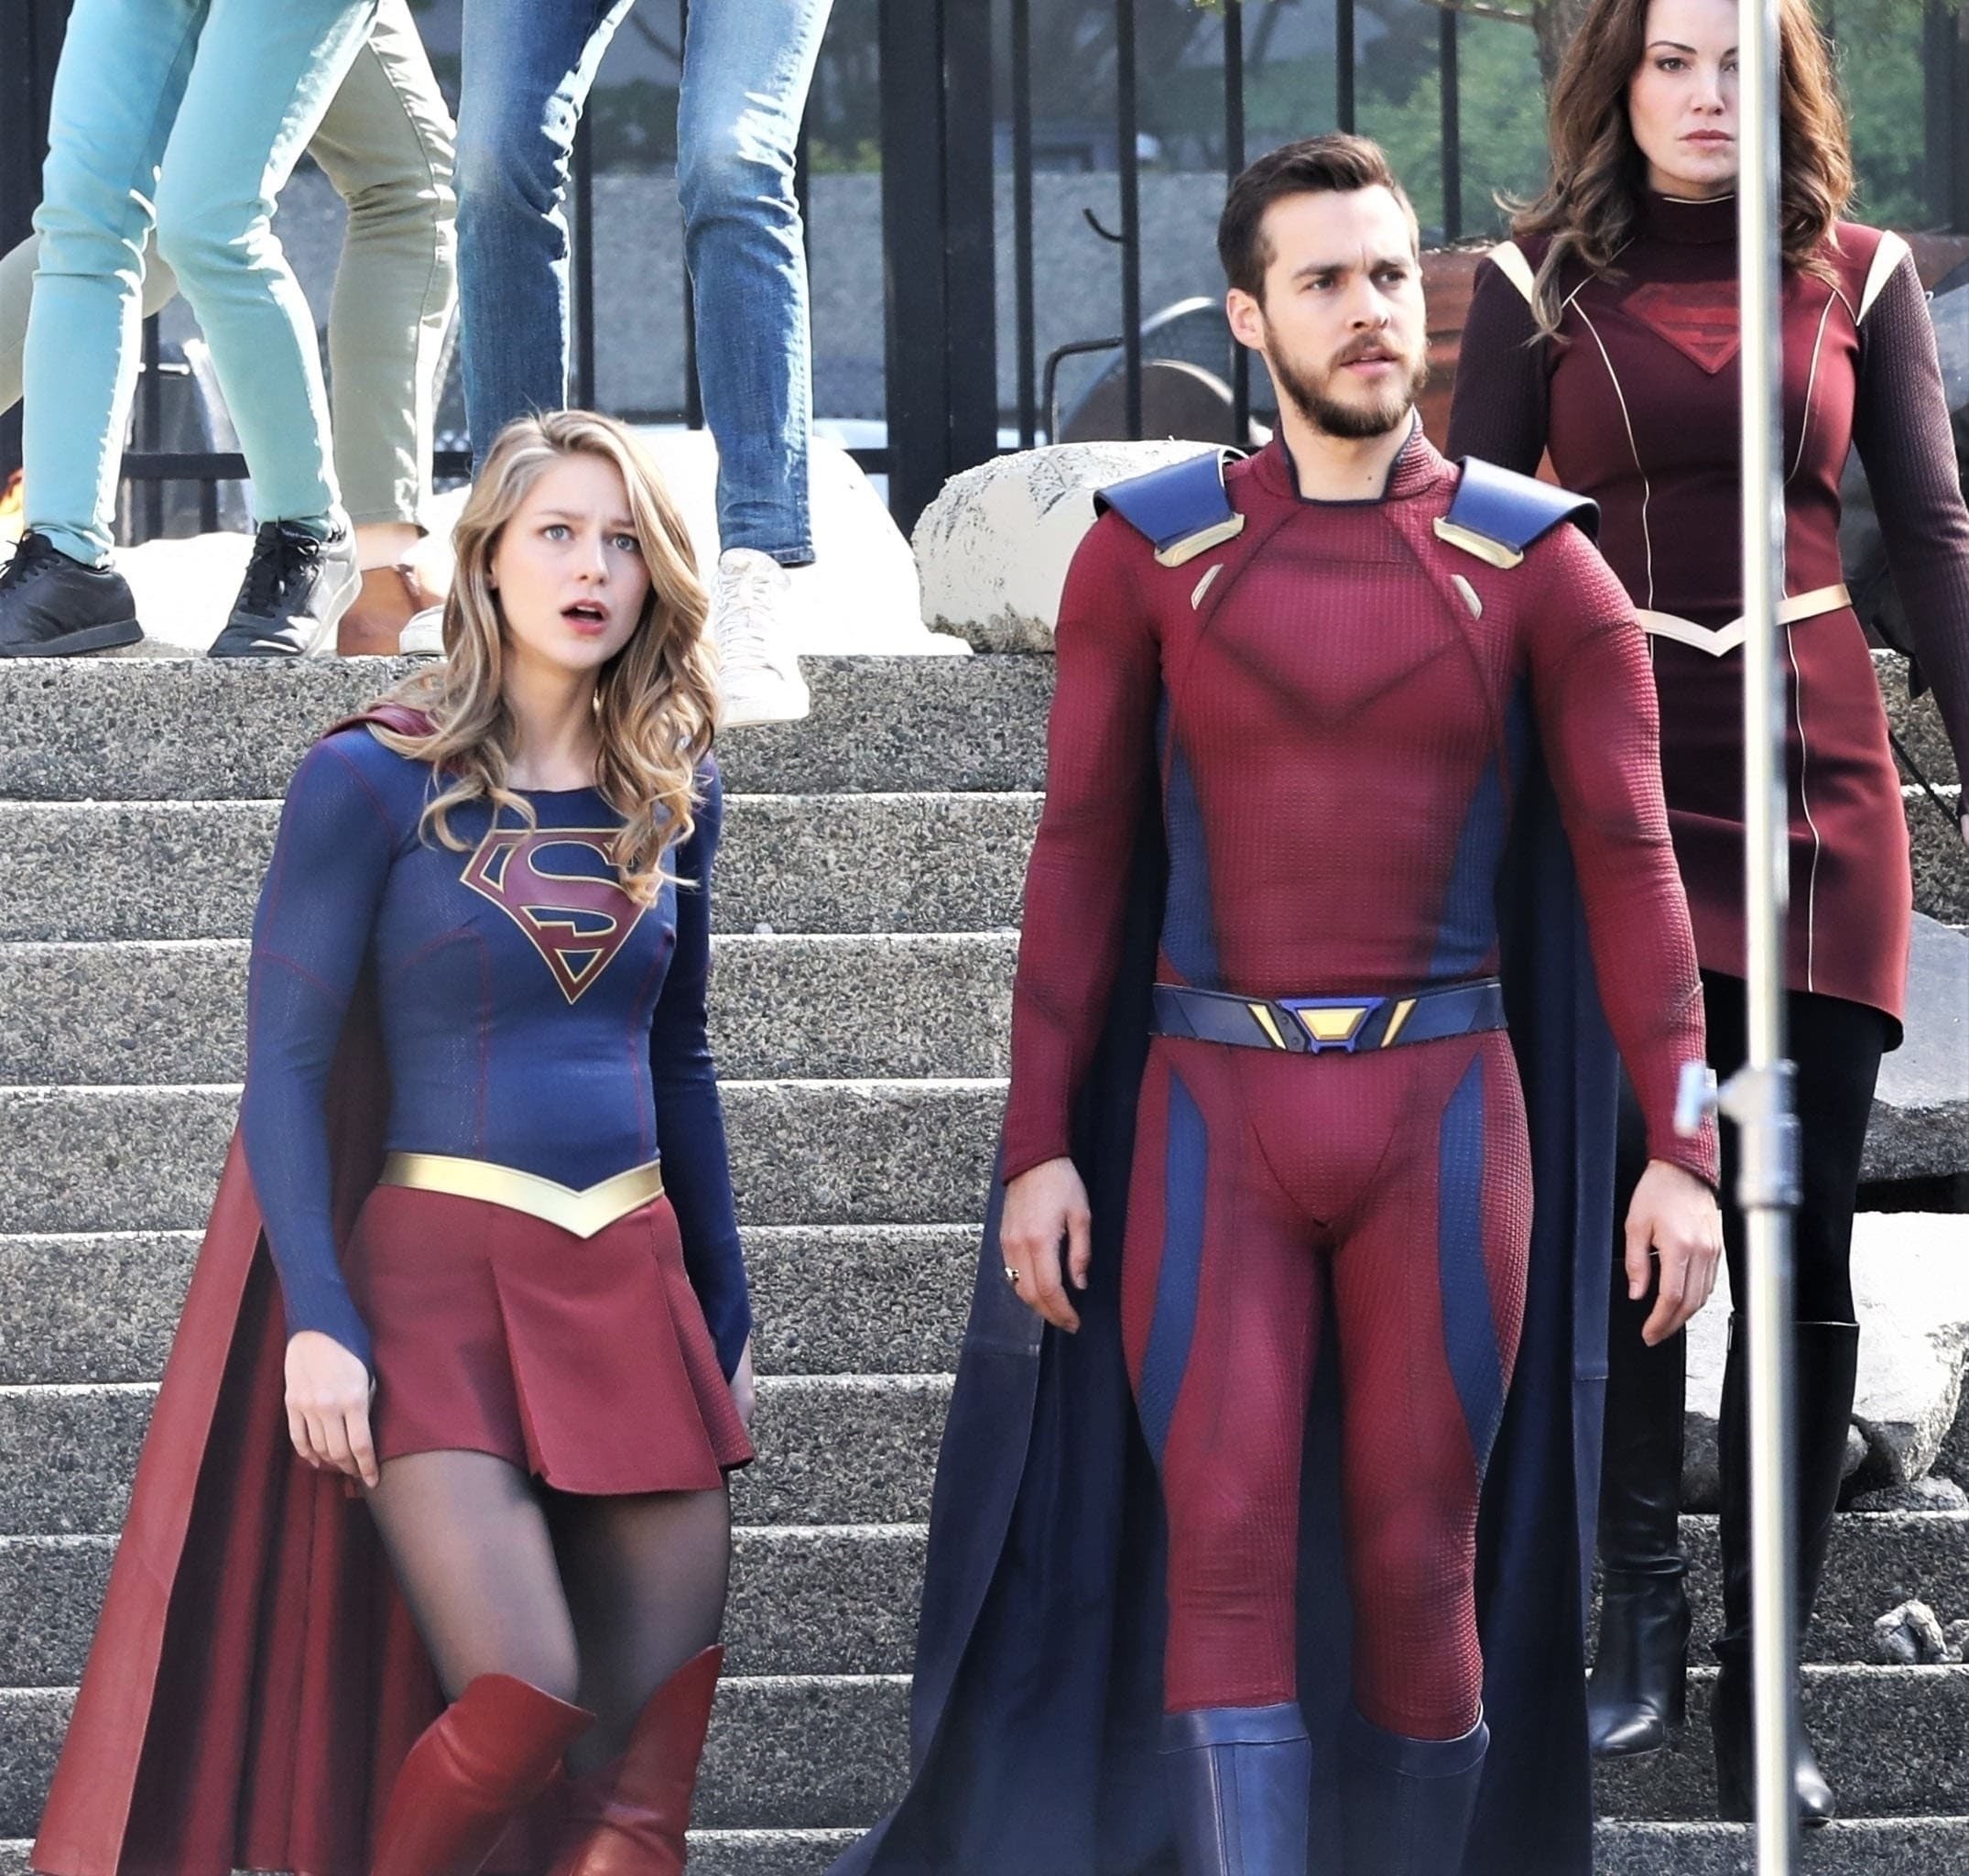 Melissa Benoist Films Supergirl Finale Scenes Of The Third Season スーパーガール シーズン 3 も ついに最終回を撮影中のメリッサ ベノイストの空飛ぶヒロインと仲間たち Cia Movie News